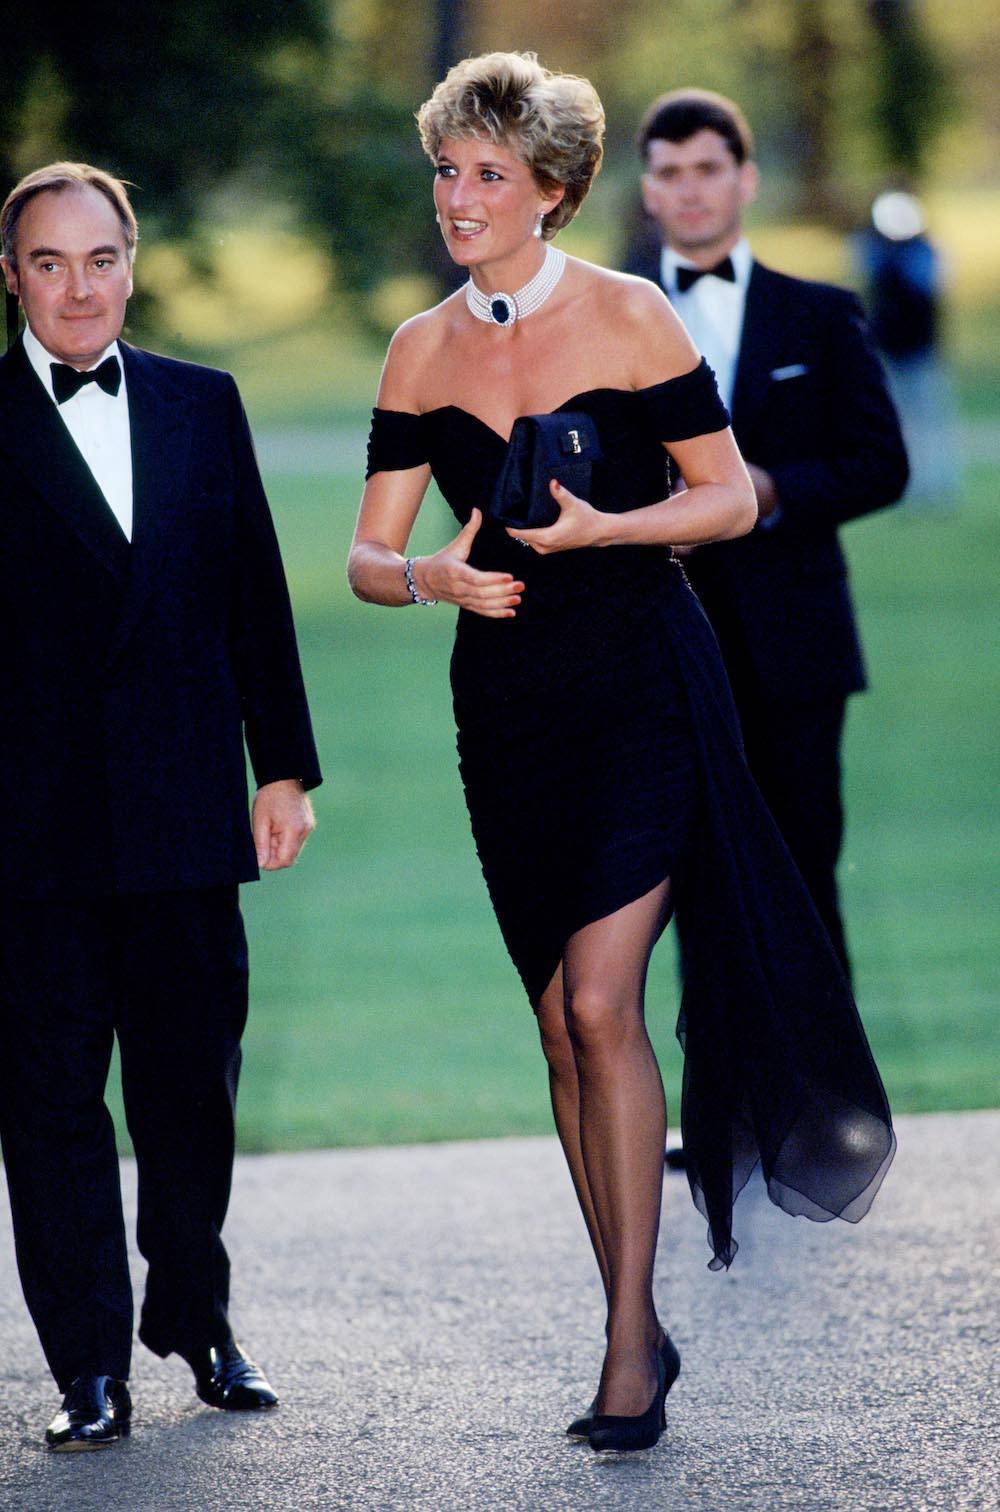 To m.in. za sprawą tej stylizacji księżna Diana została ikoną stylu. Lady Di założyła słynną małą czarną projektu Christiny Stambolian na galę charytatywną. To do dziś jedna z najsłynniejszych sukienek księżnej. (Fot. Getty Images)